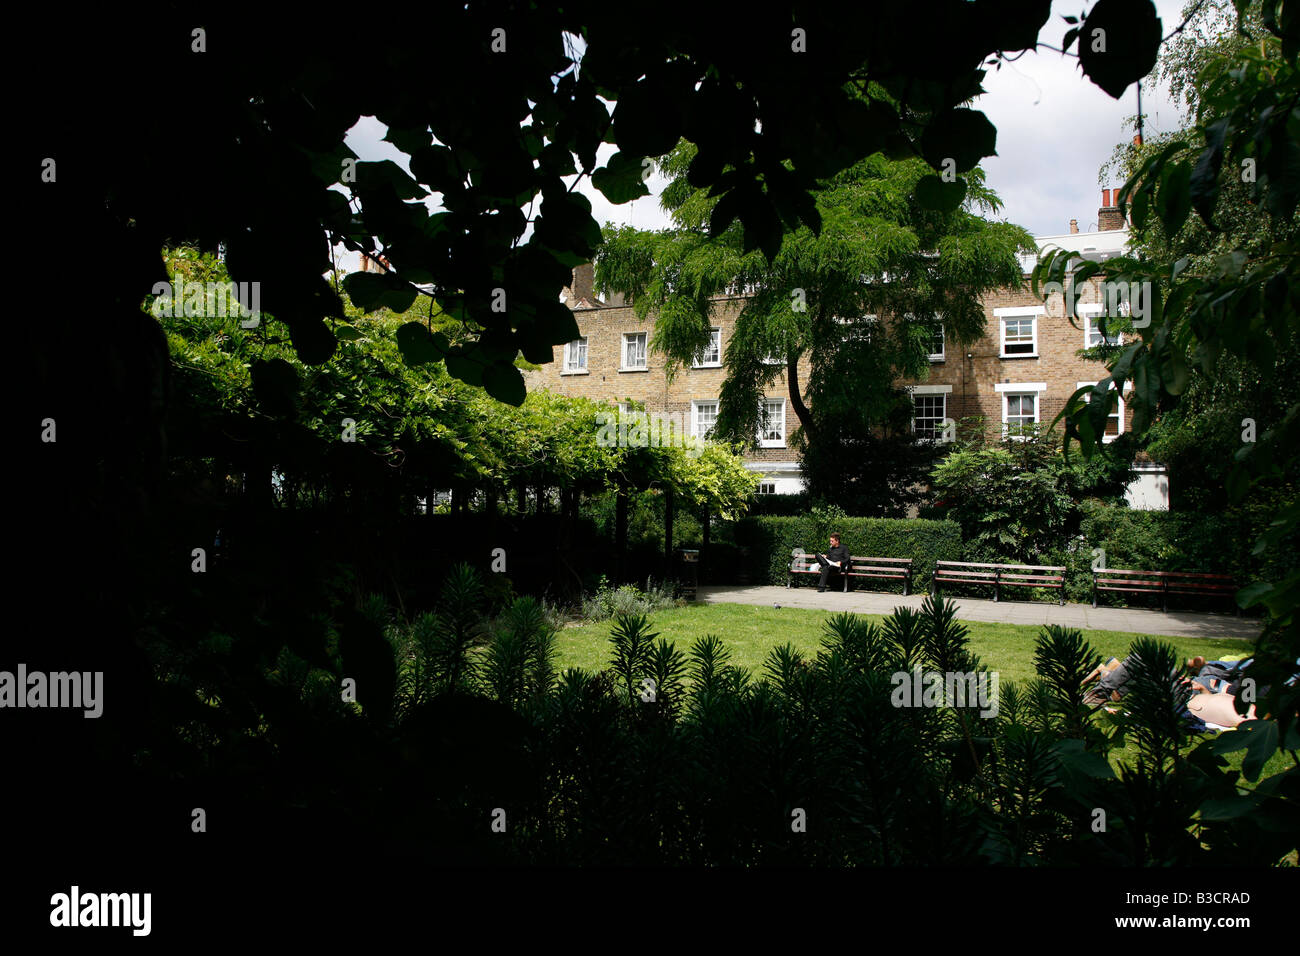 Jardins au lieu de Colville, Fitzrovia, Londres Banque D'Images